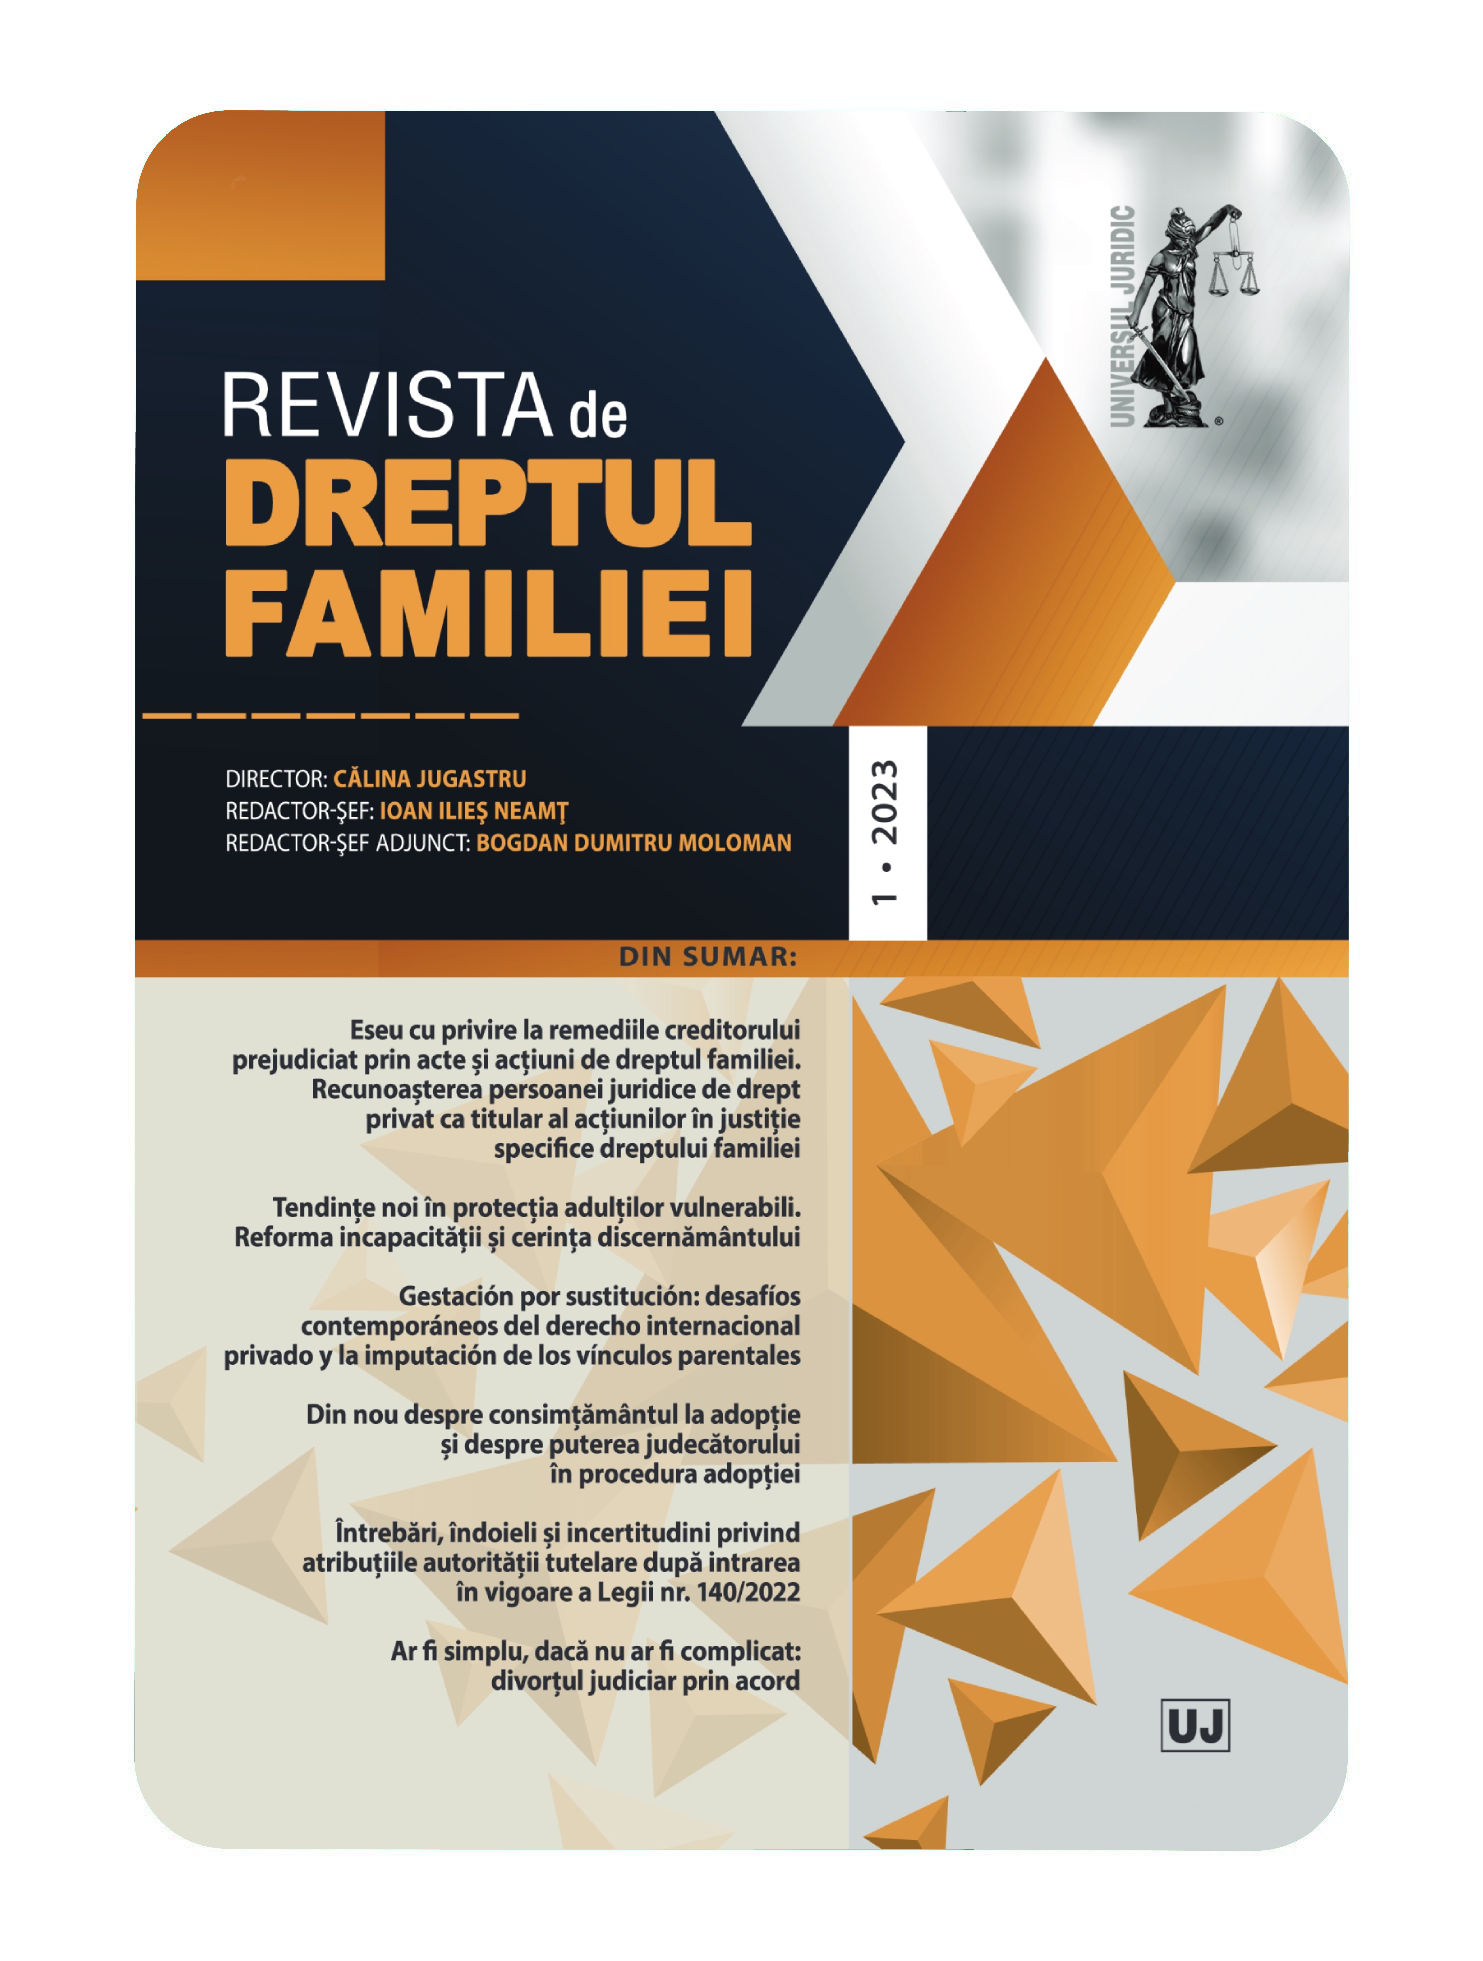 Marieta Avram, Drept civil. Familia, ediţia a 3-a, revizuită şi adăugită, Editura Hamangiu, Bucureşti, 2022, 840 pag.